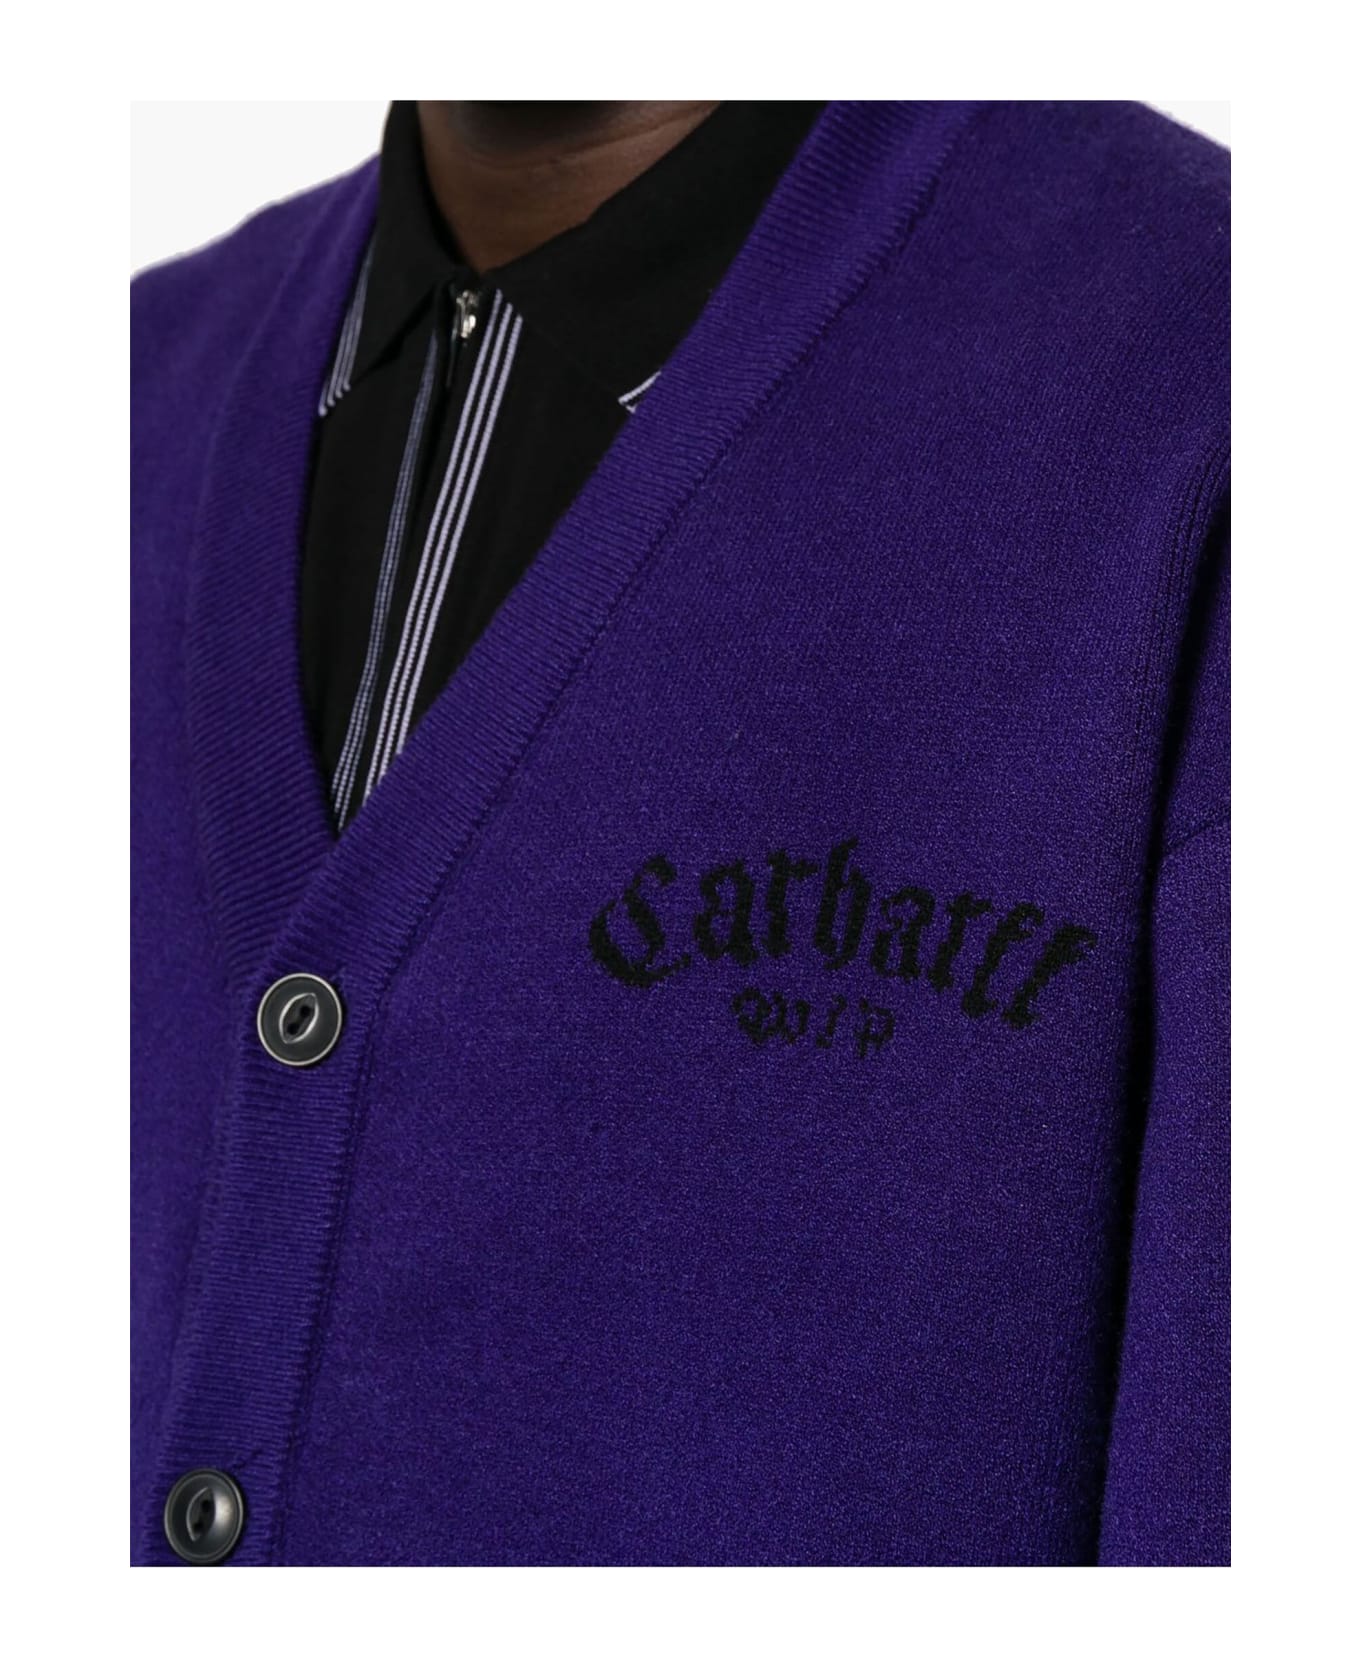 Carhartt Purple Onyx Knit Cardigan - Viola